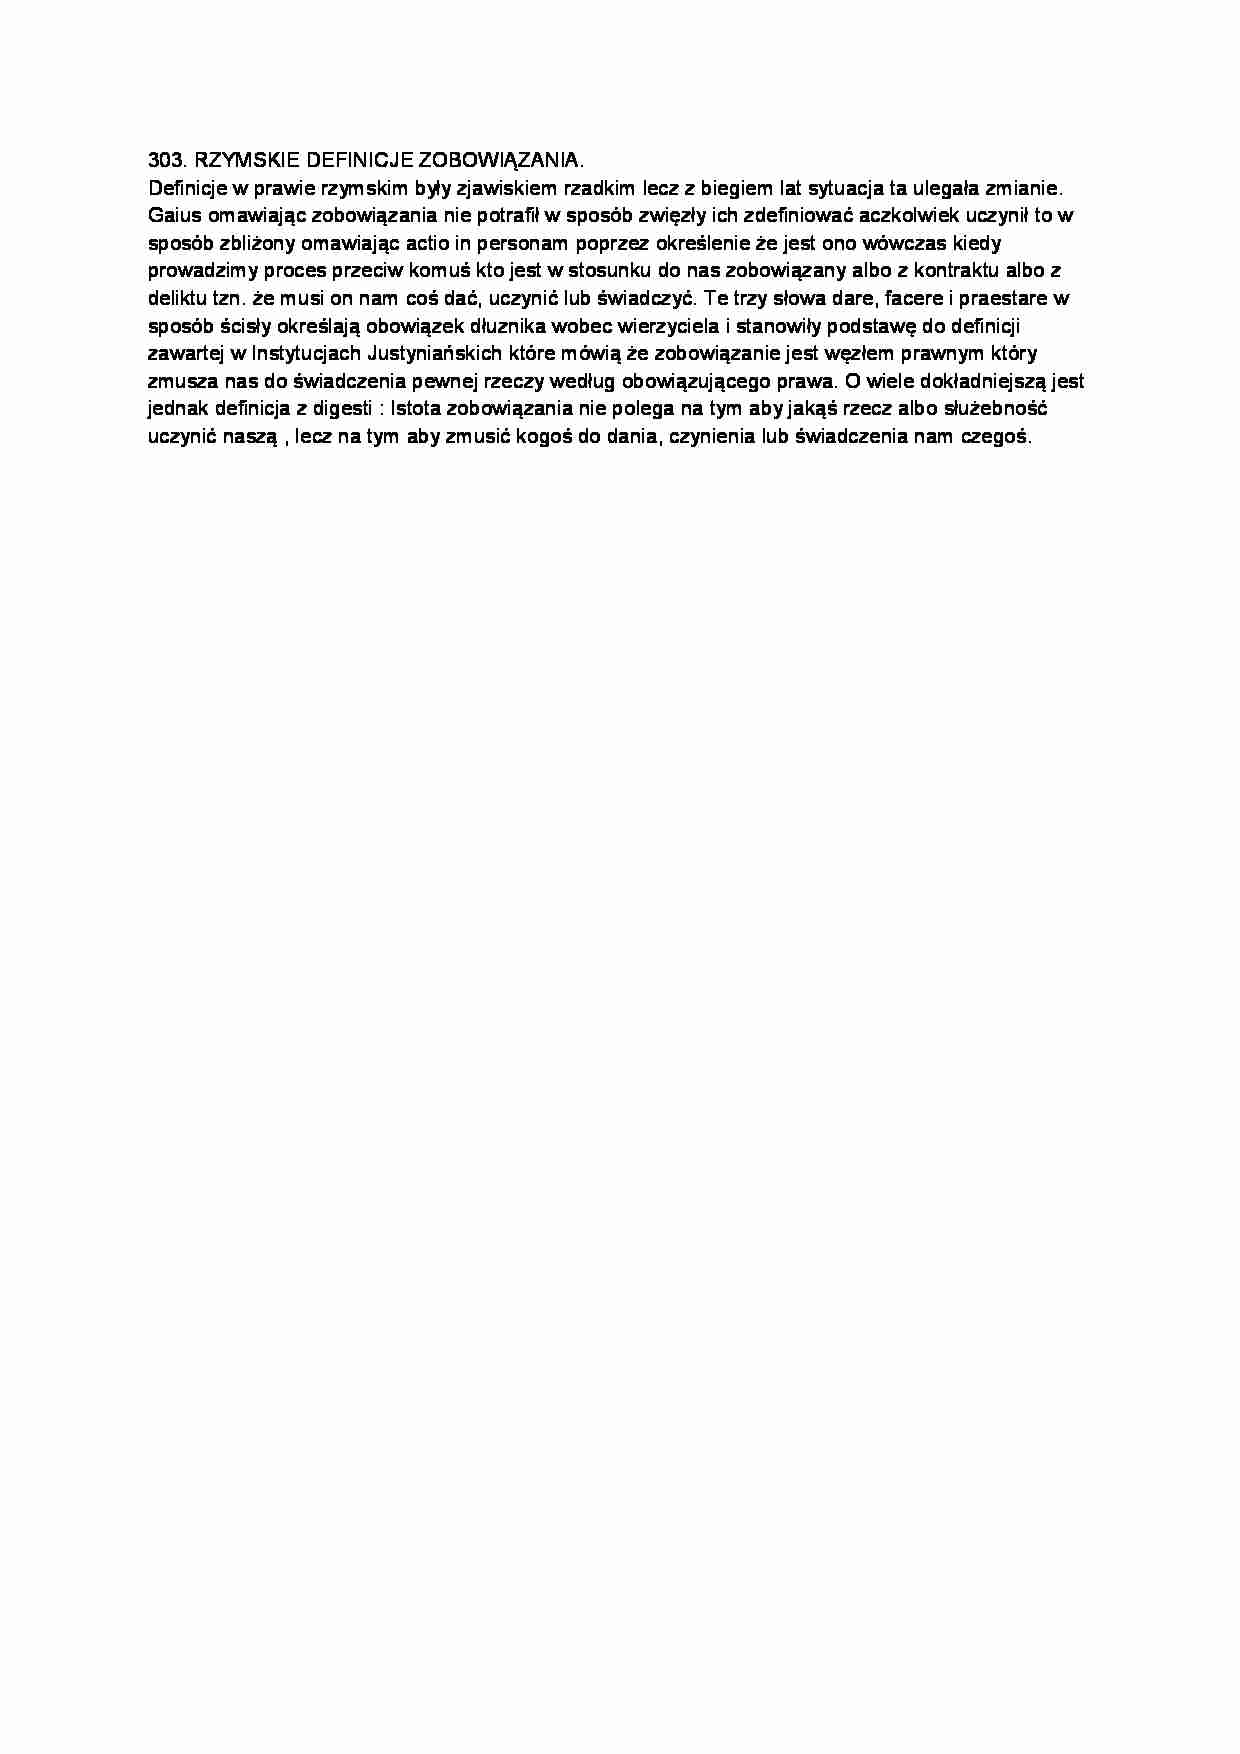 Rzymskie definicje zobowiązania-opracowanie - strona 1